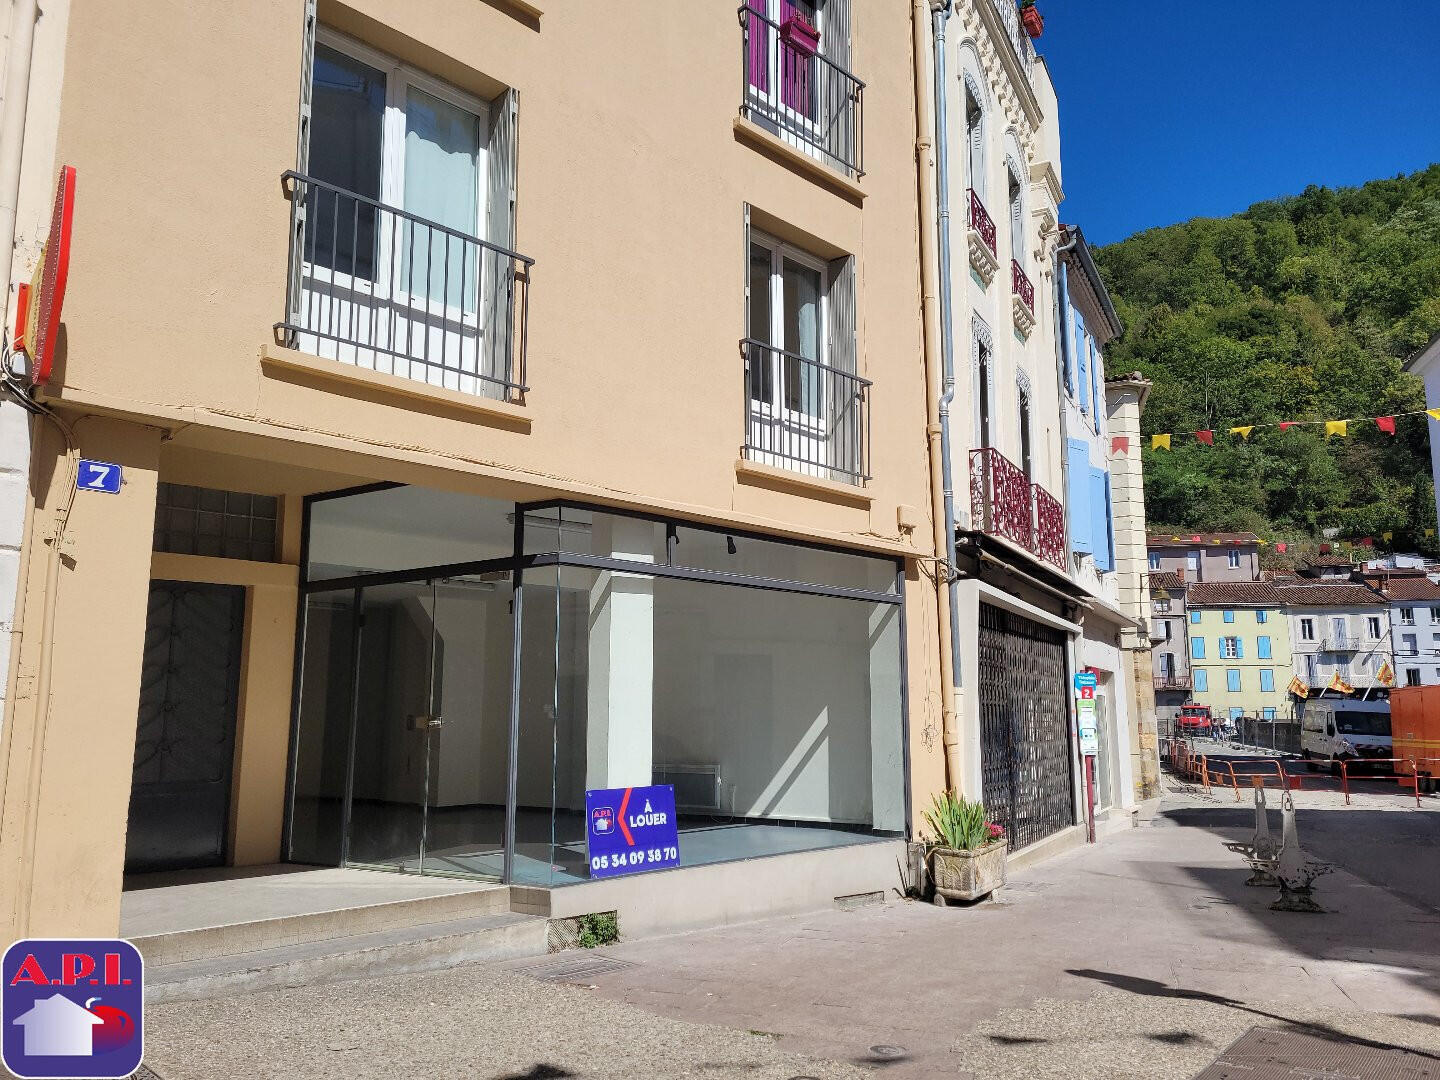 Loue local commercial 50m² sur rue passante Foix